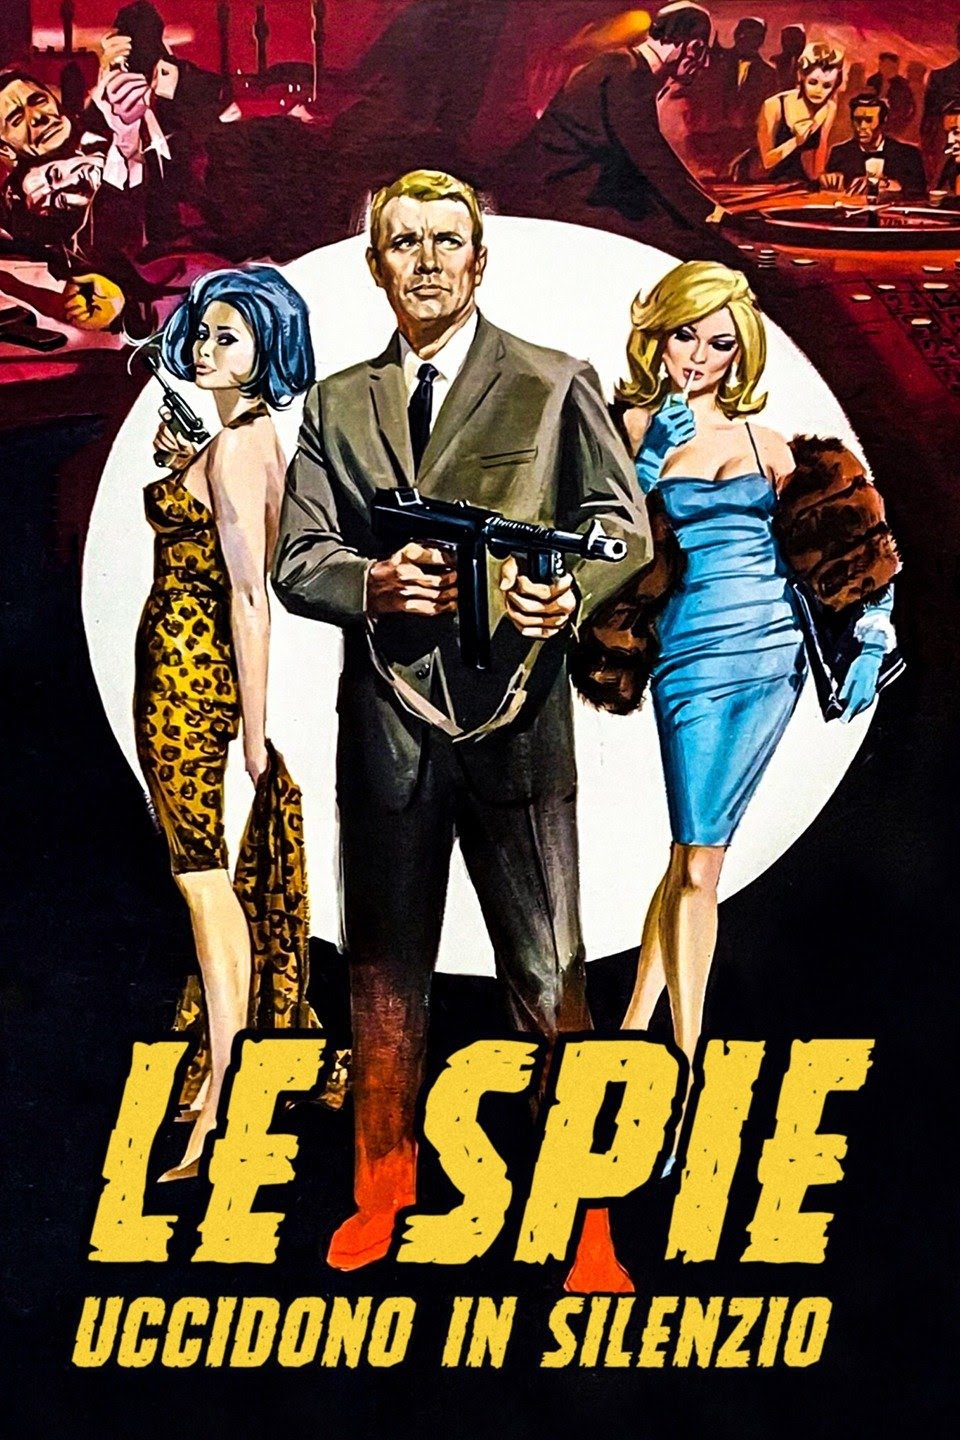 Le spie uccidono in silenzio (1966)